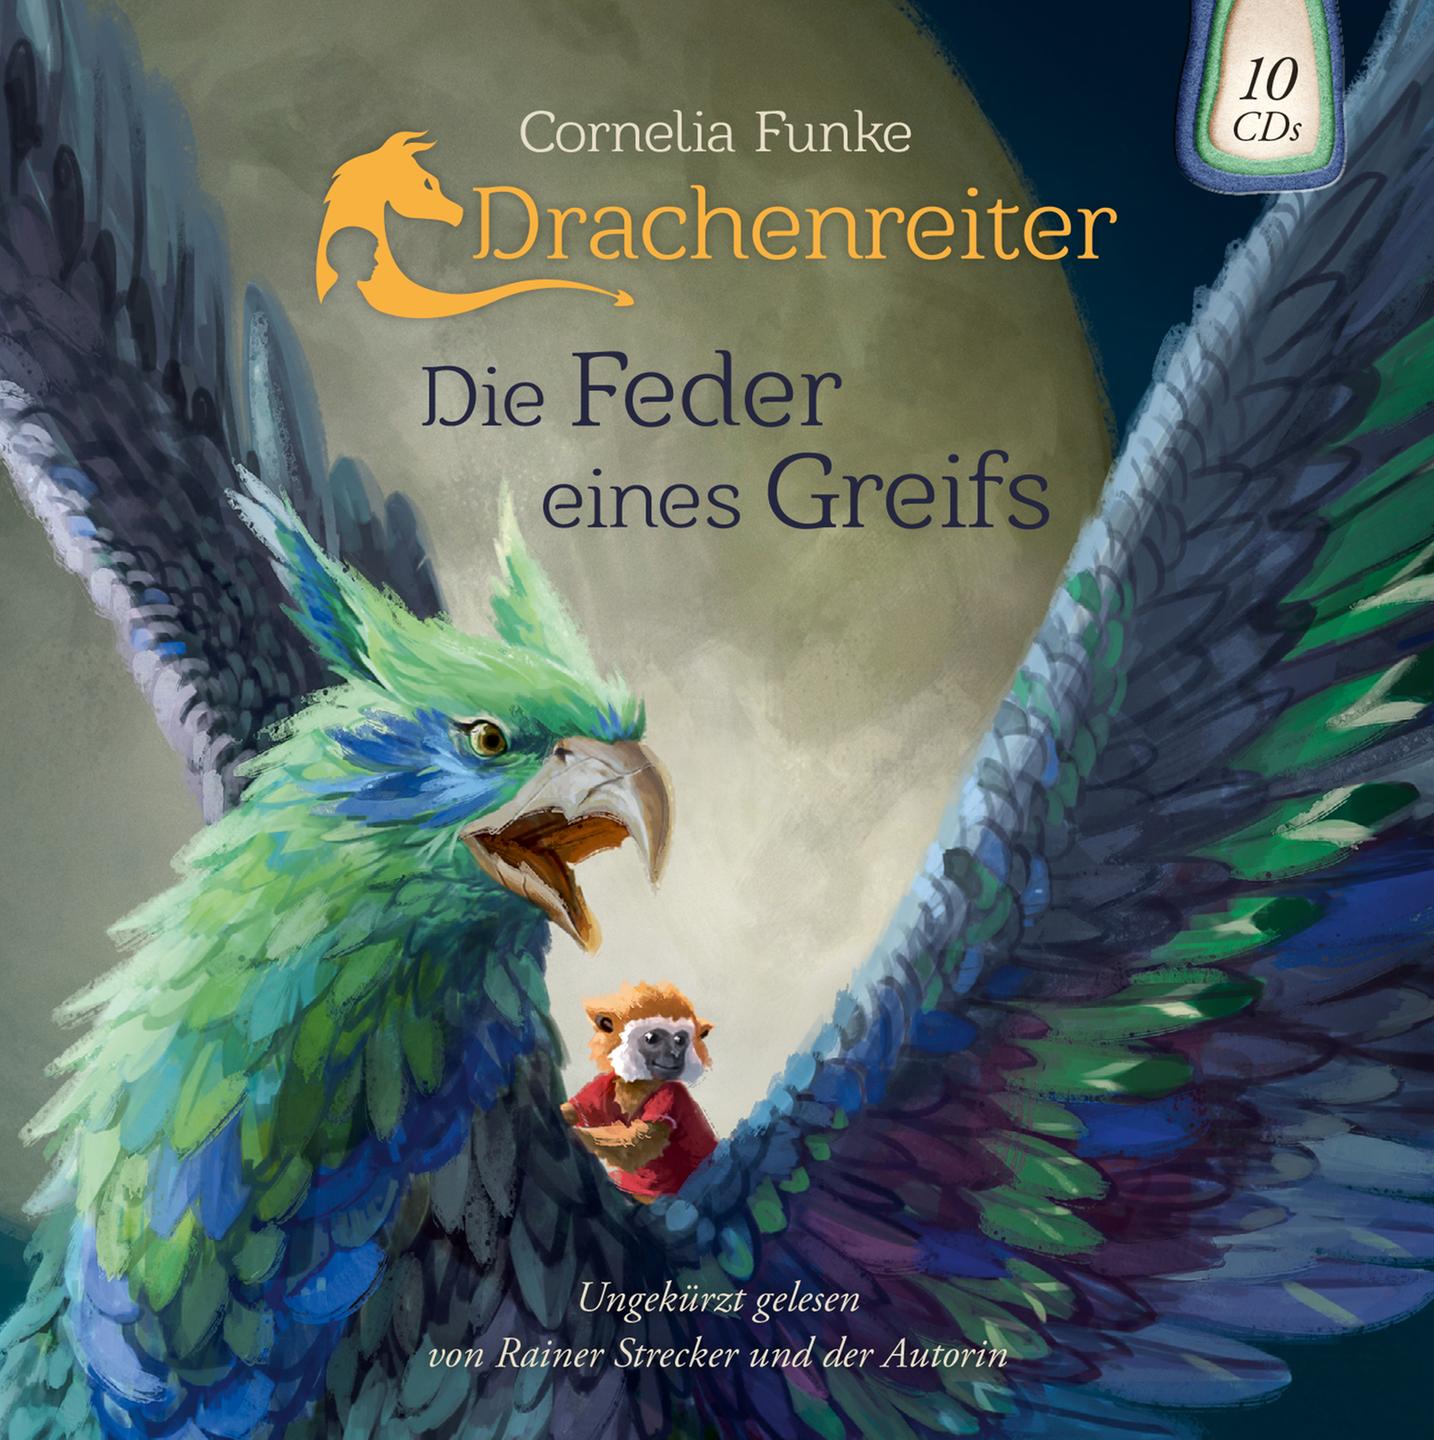 Cornelia Funke,"Drachenreiter: Die Feder eines Greifs", Cover